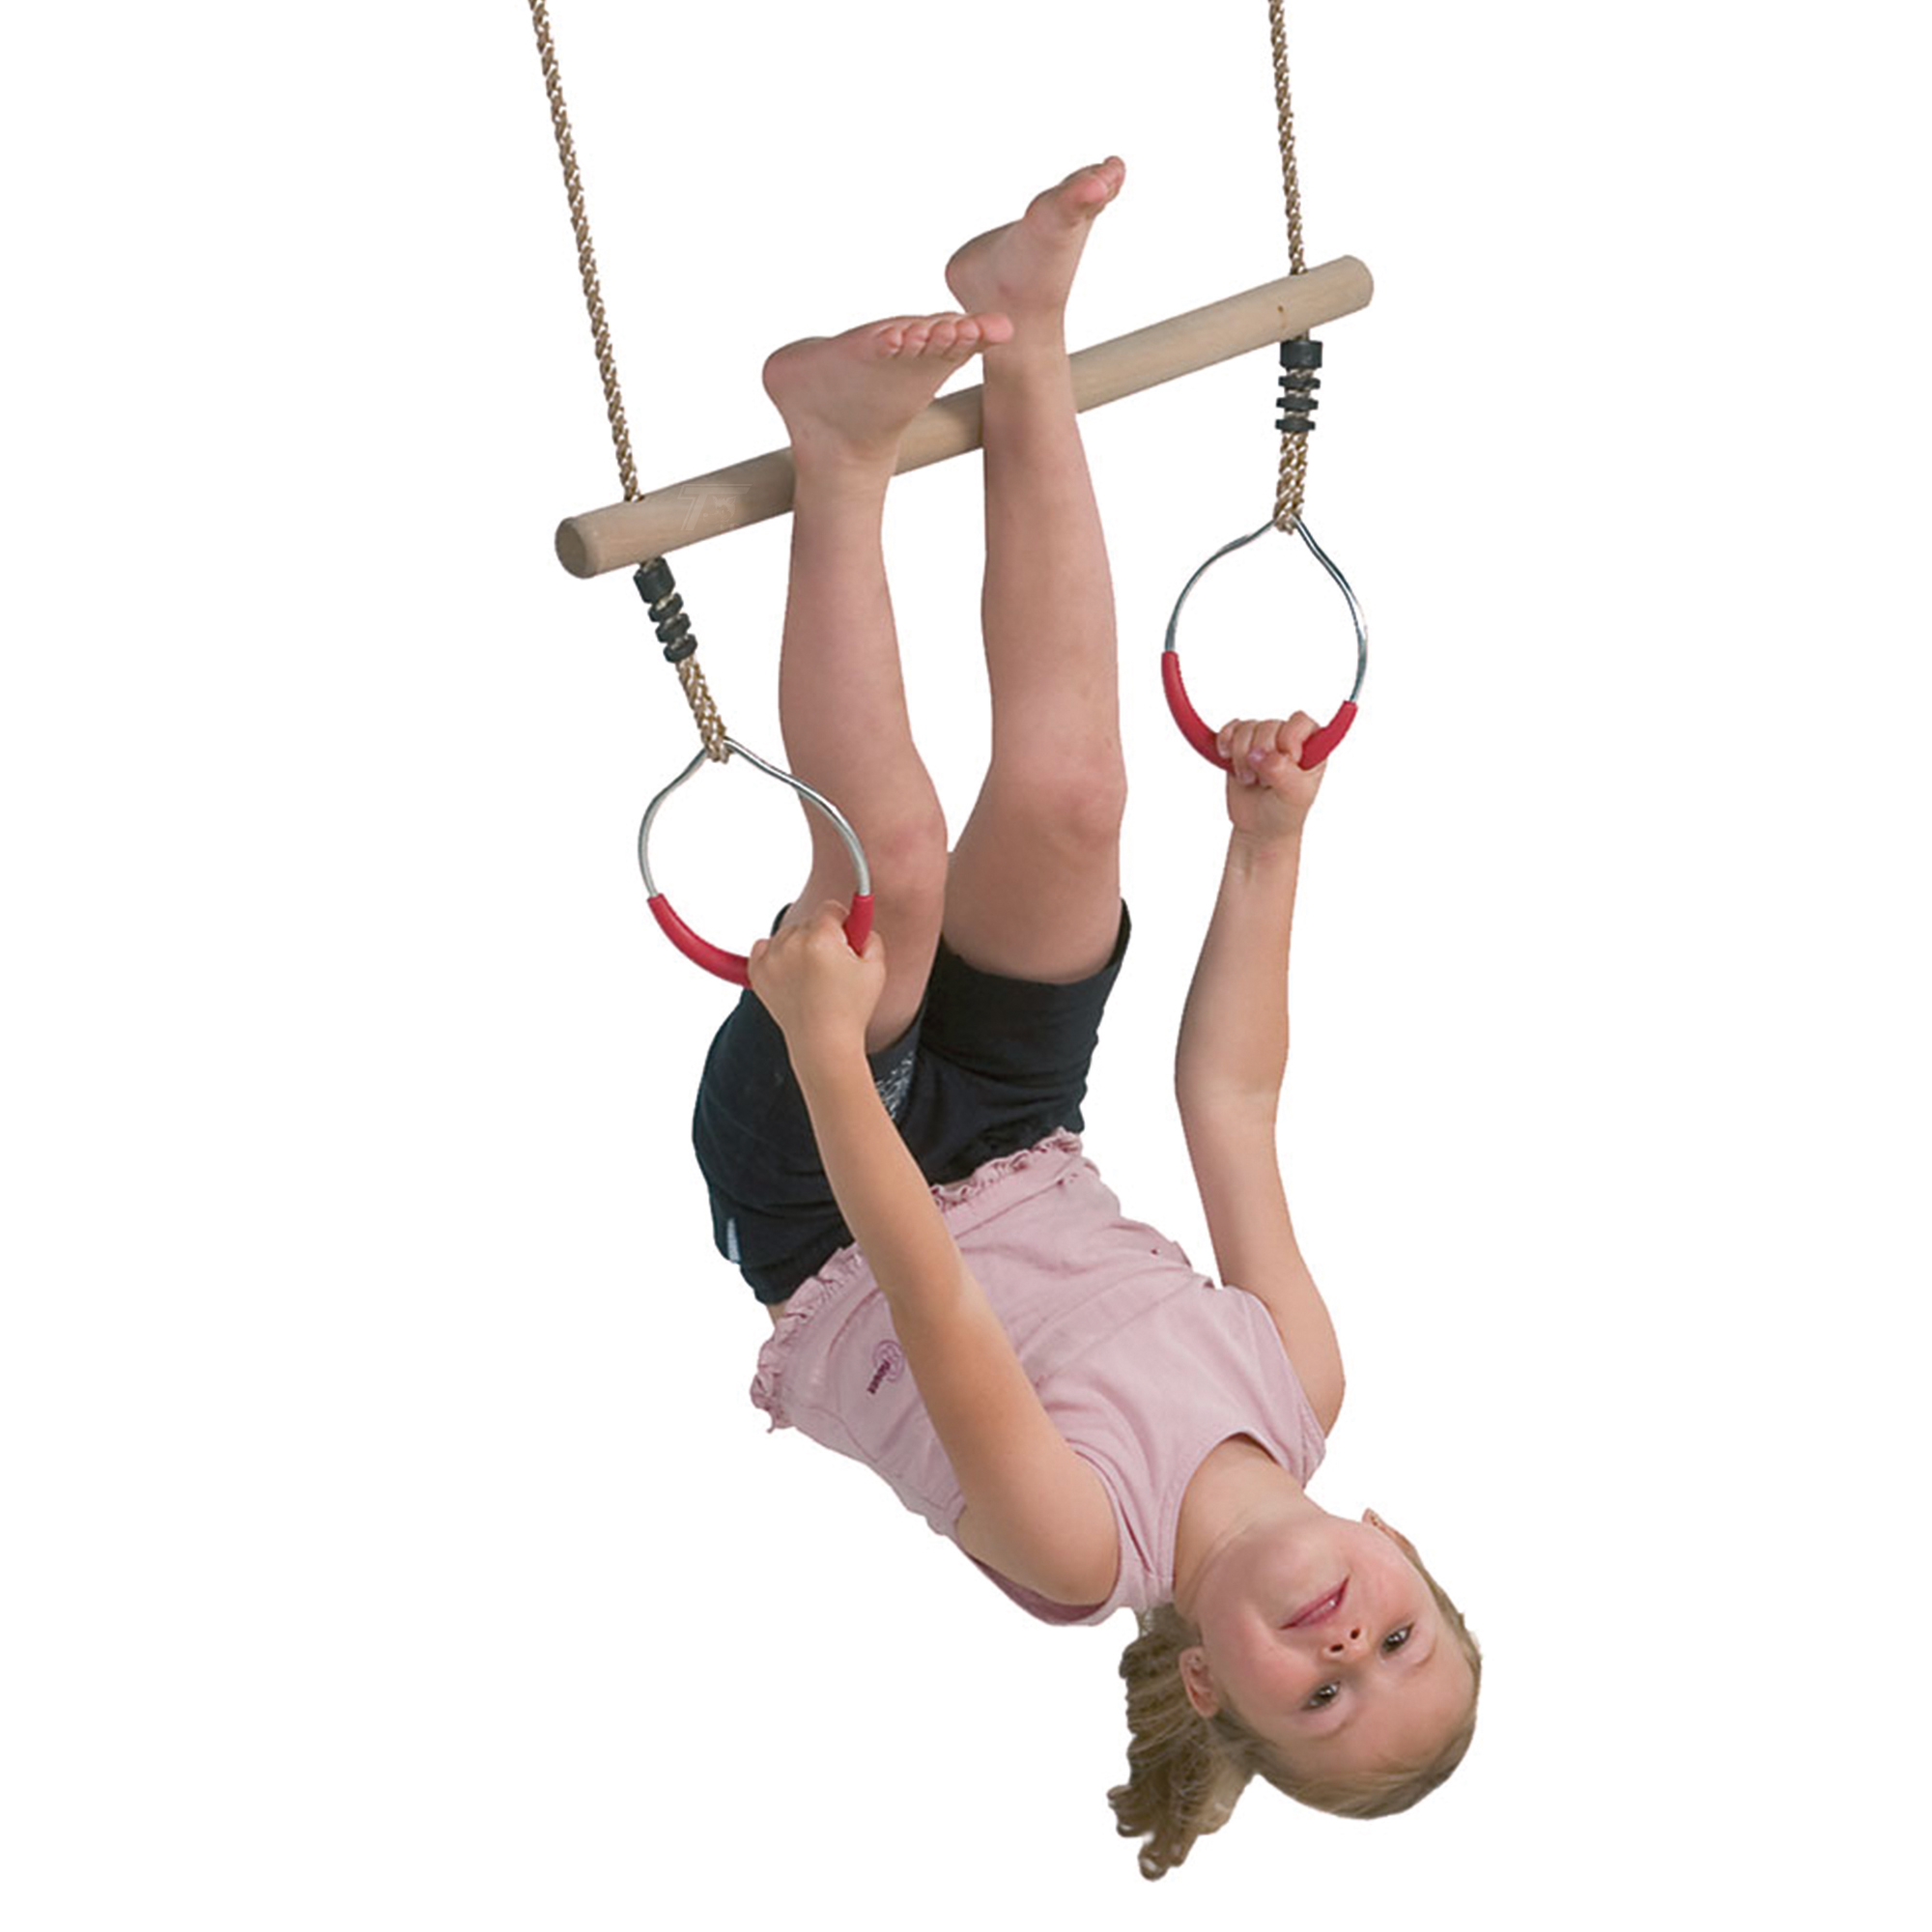 Speelgarnituur Ring met trapeze, touwlengte 200 cm